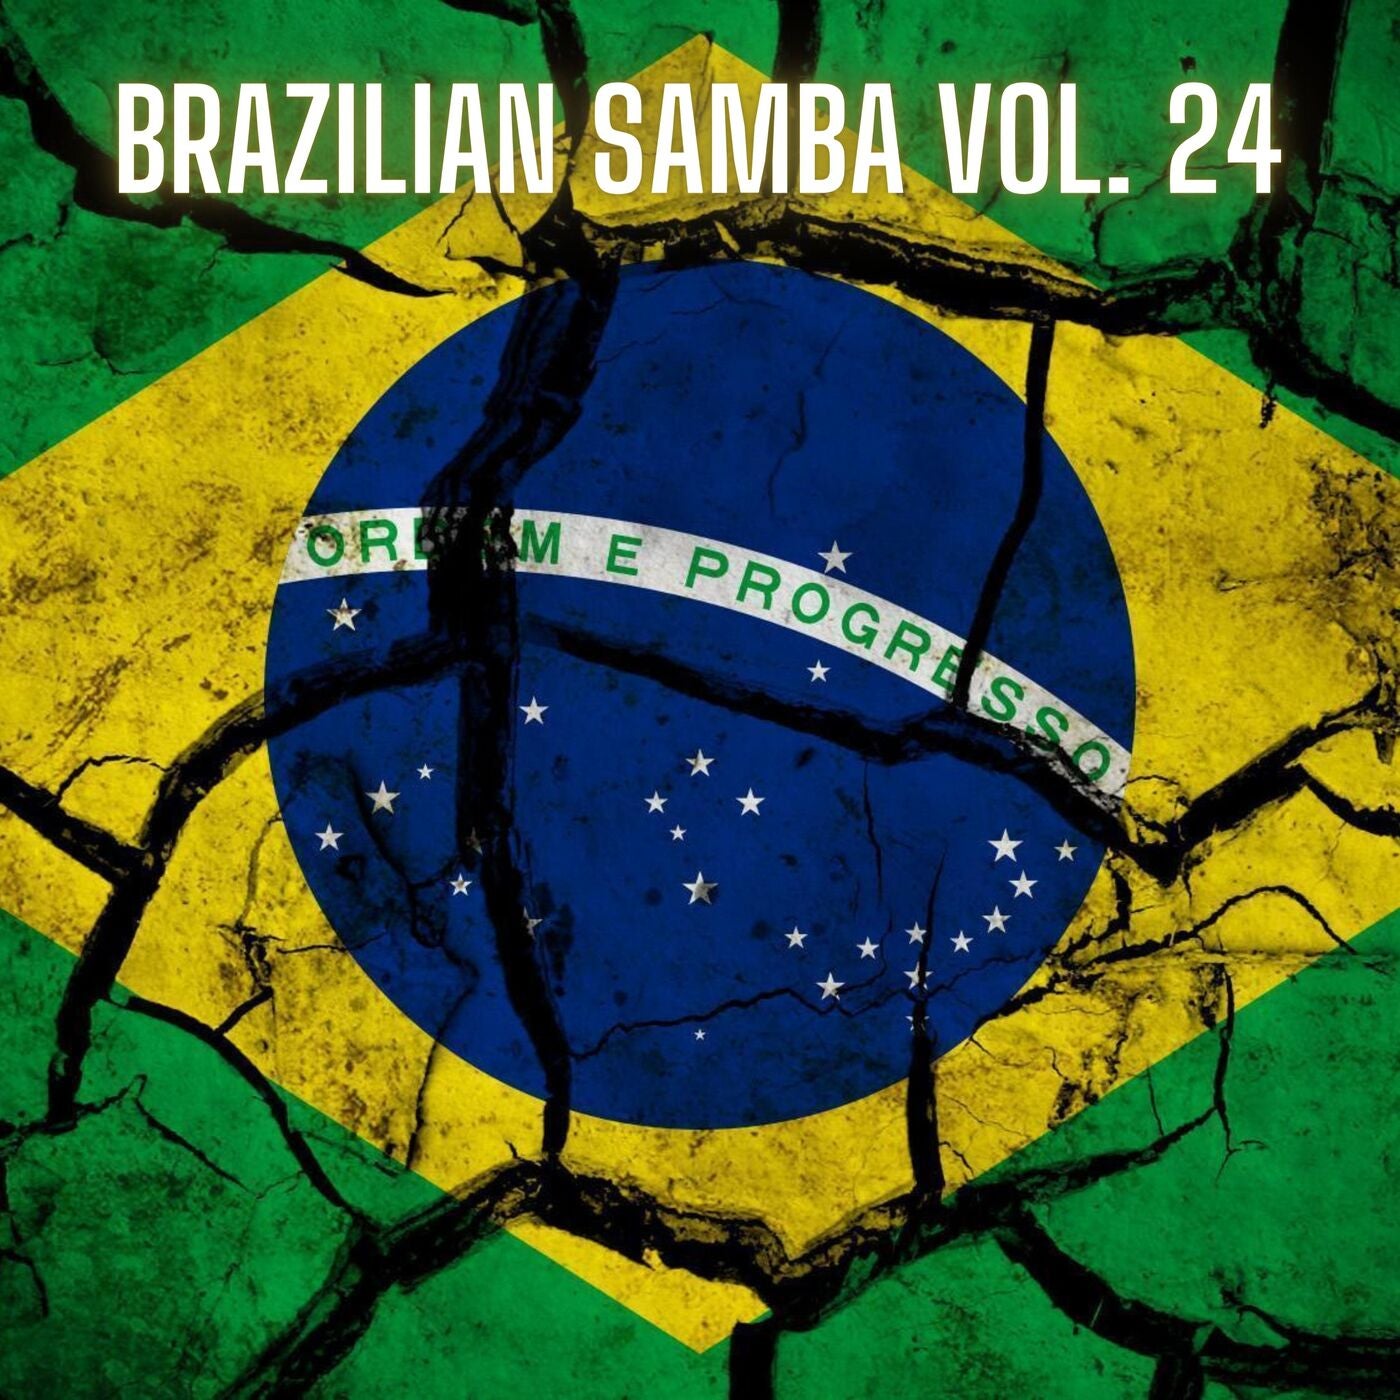 Brazilian Samba Vol. 24